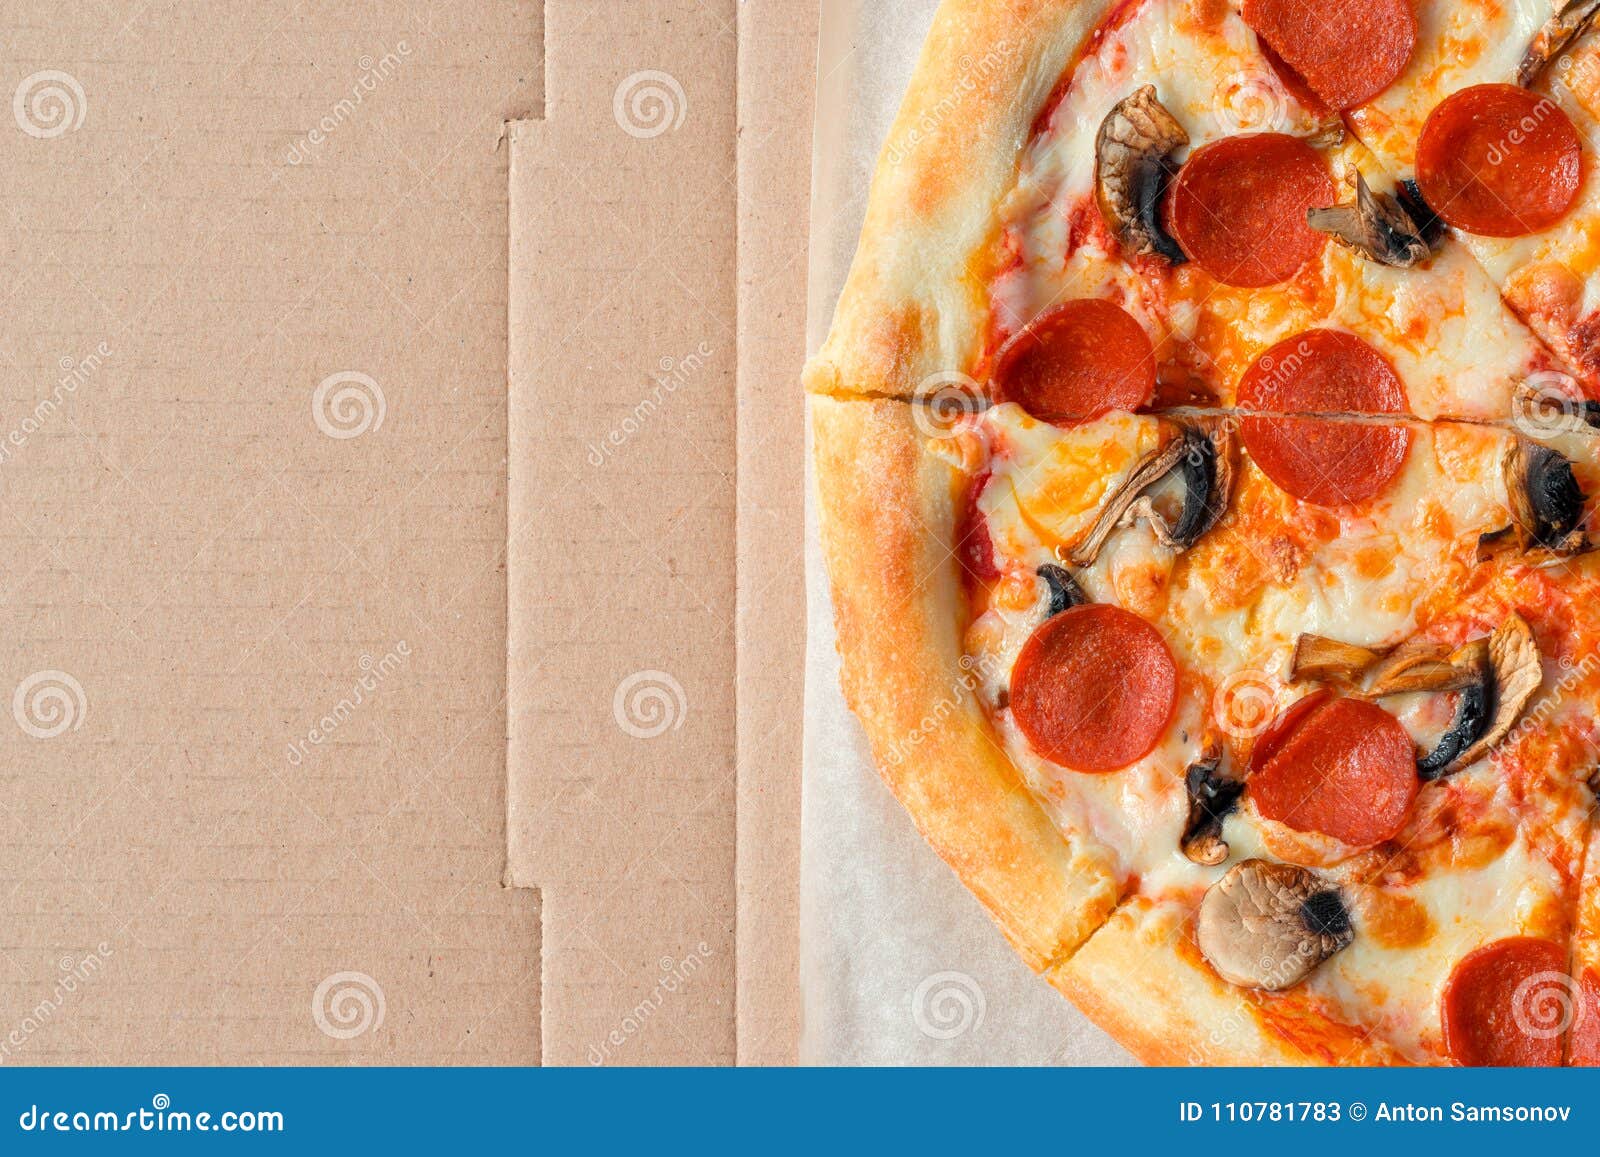 фото пепперони пицца в коробке фото 75